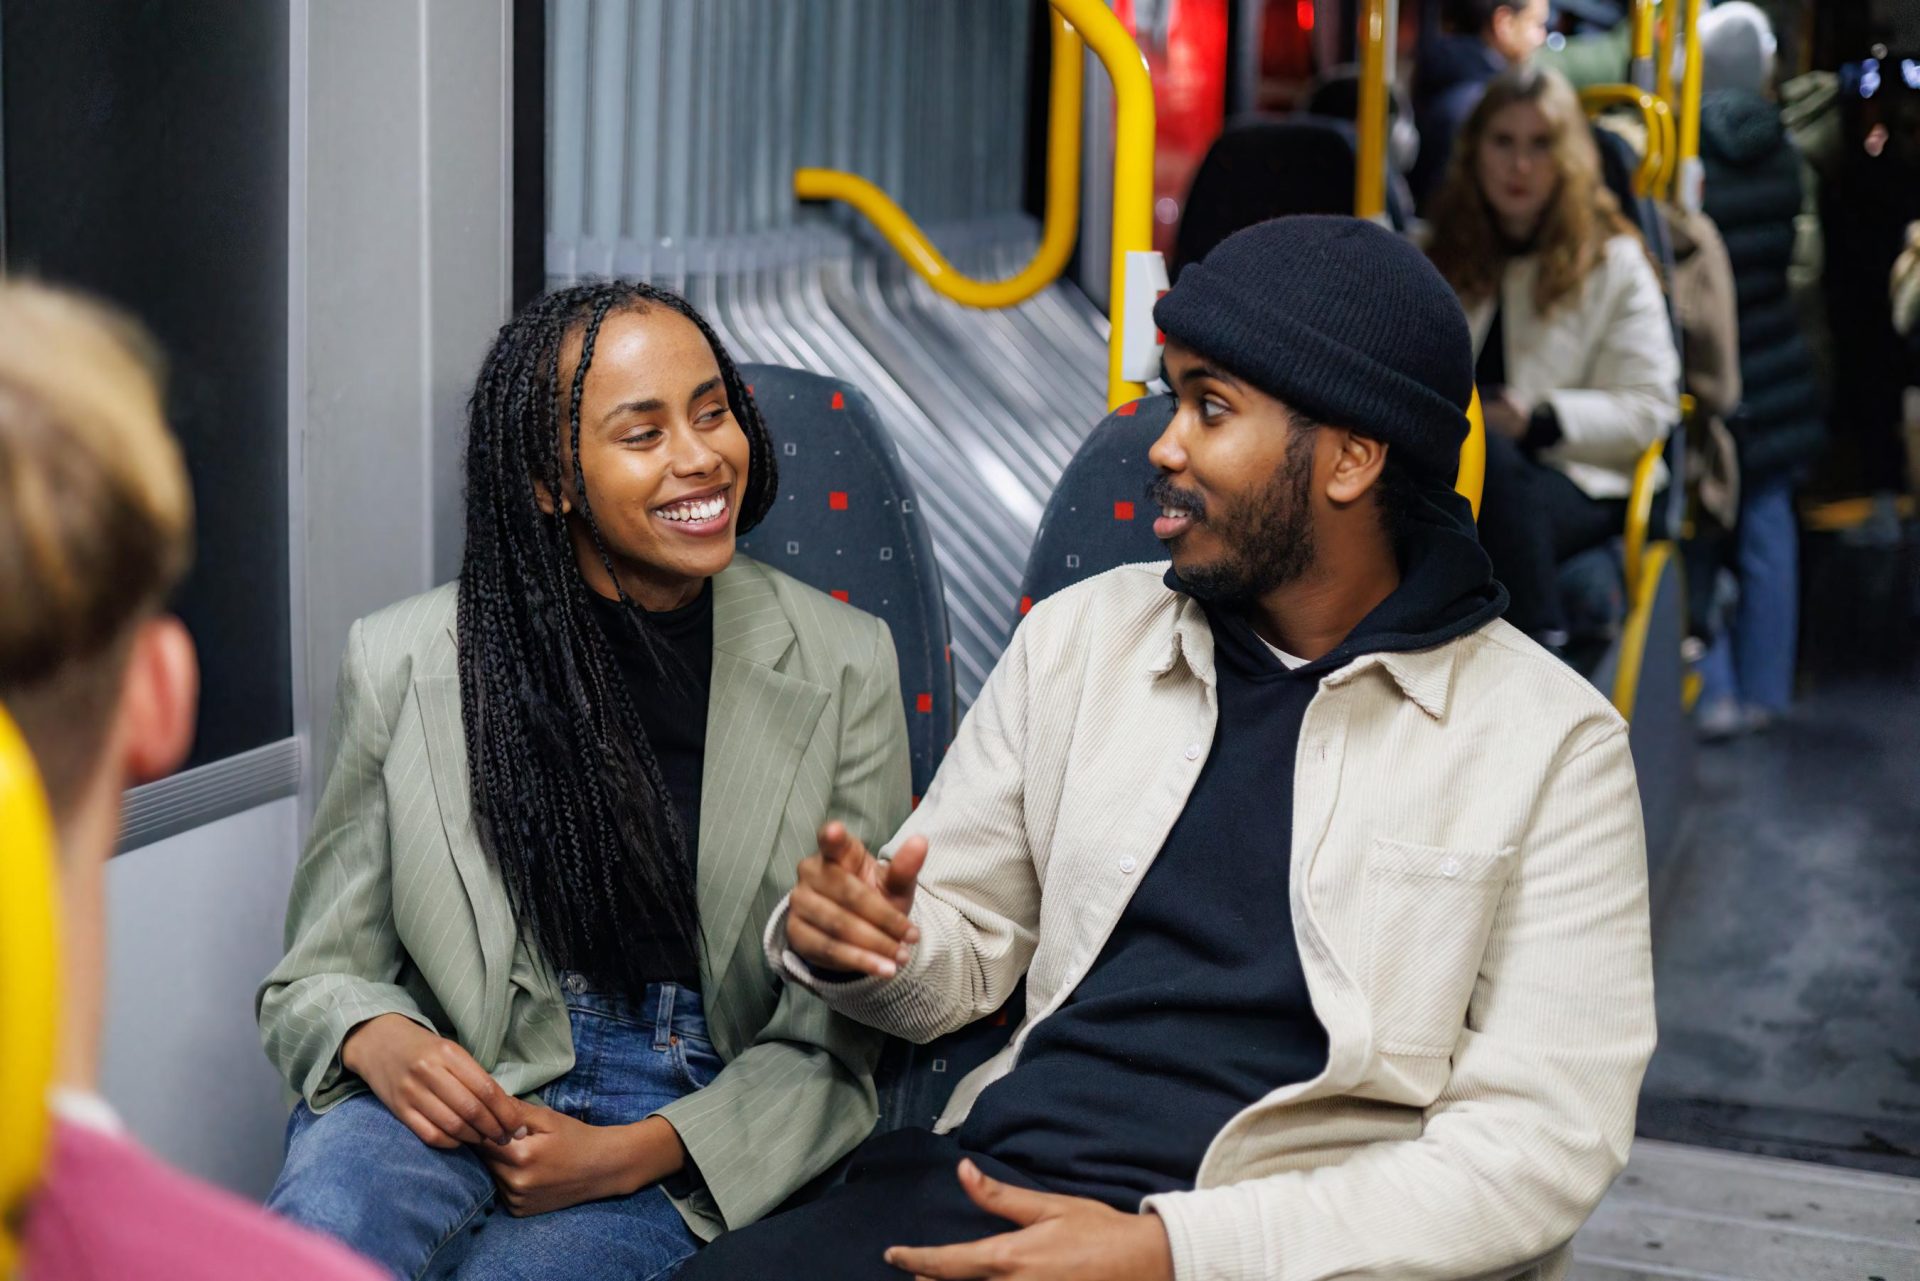 En mann og en kvinne, begge smilende, deltar i samtale på en bybuss. kvinnen har flettet hår og har på seg en grønn jakke; mannen har på seg en beige jakke og en svart lue.